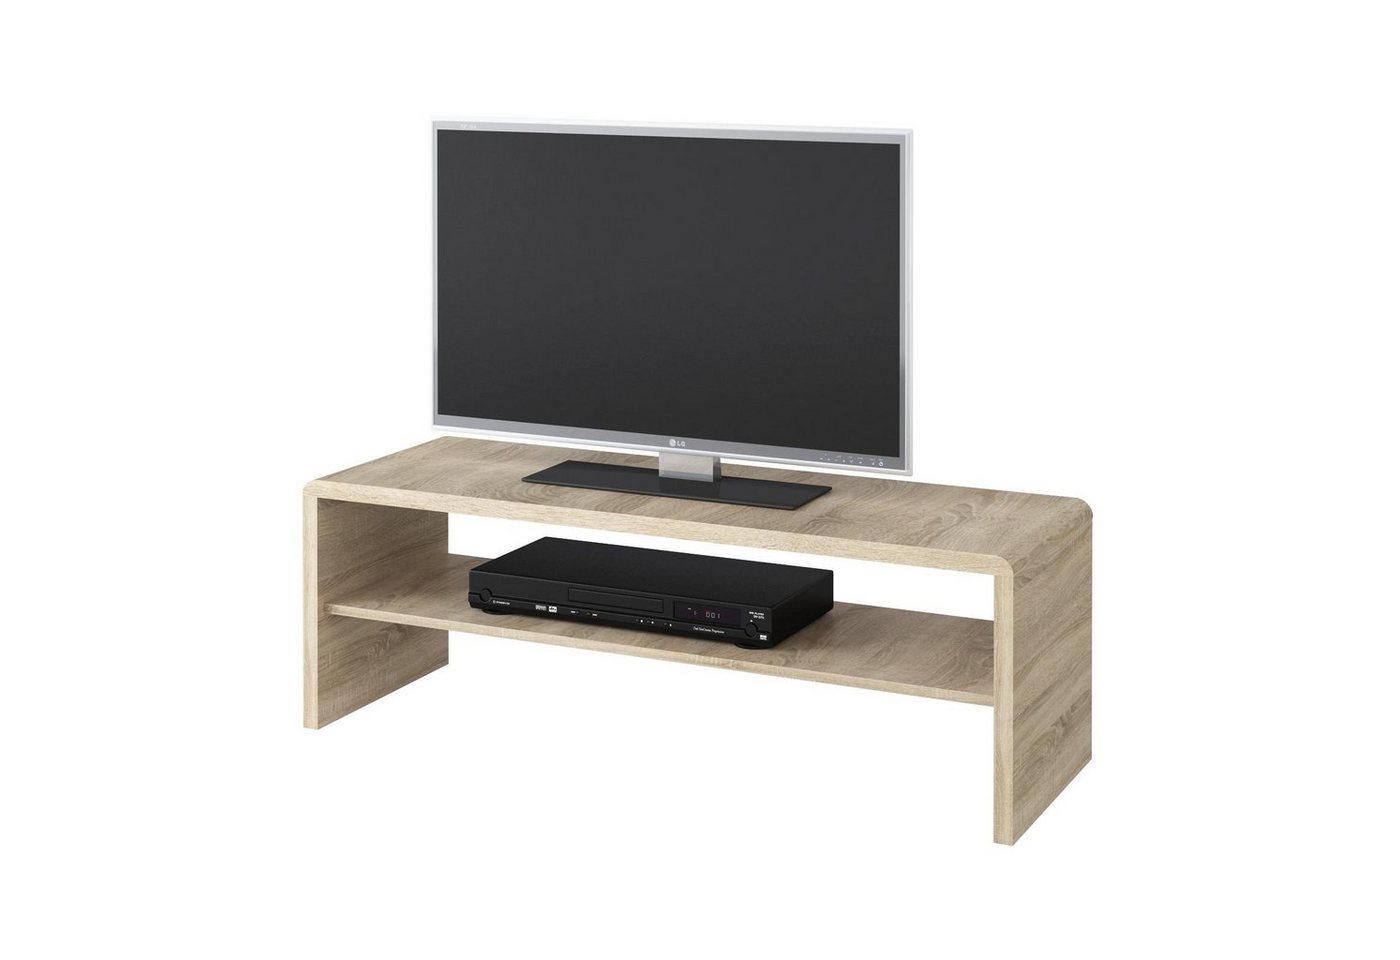 CARO-Möbel Couchtisch LEXA, Couchtisch TV Lowboard Fernsehtisch in Sonoma Eiche 120 x 40 cm mit Ab von CARO-Möbel